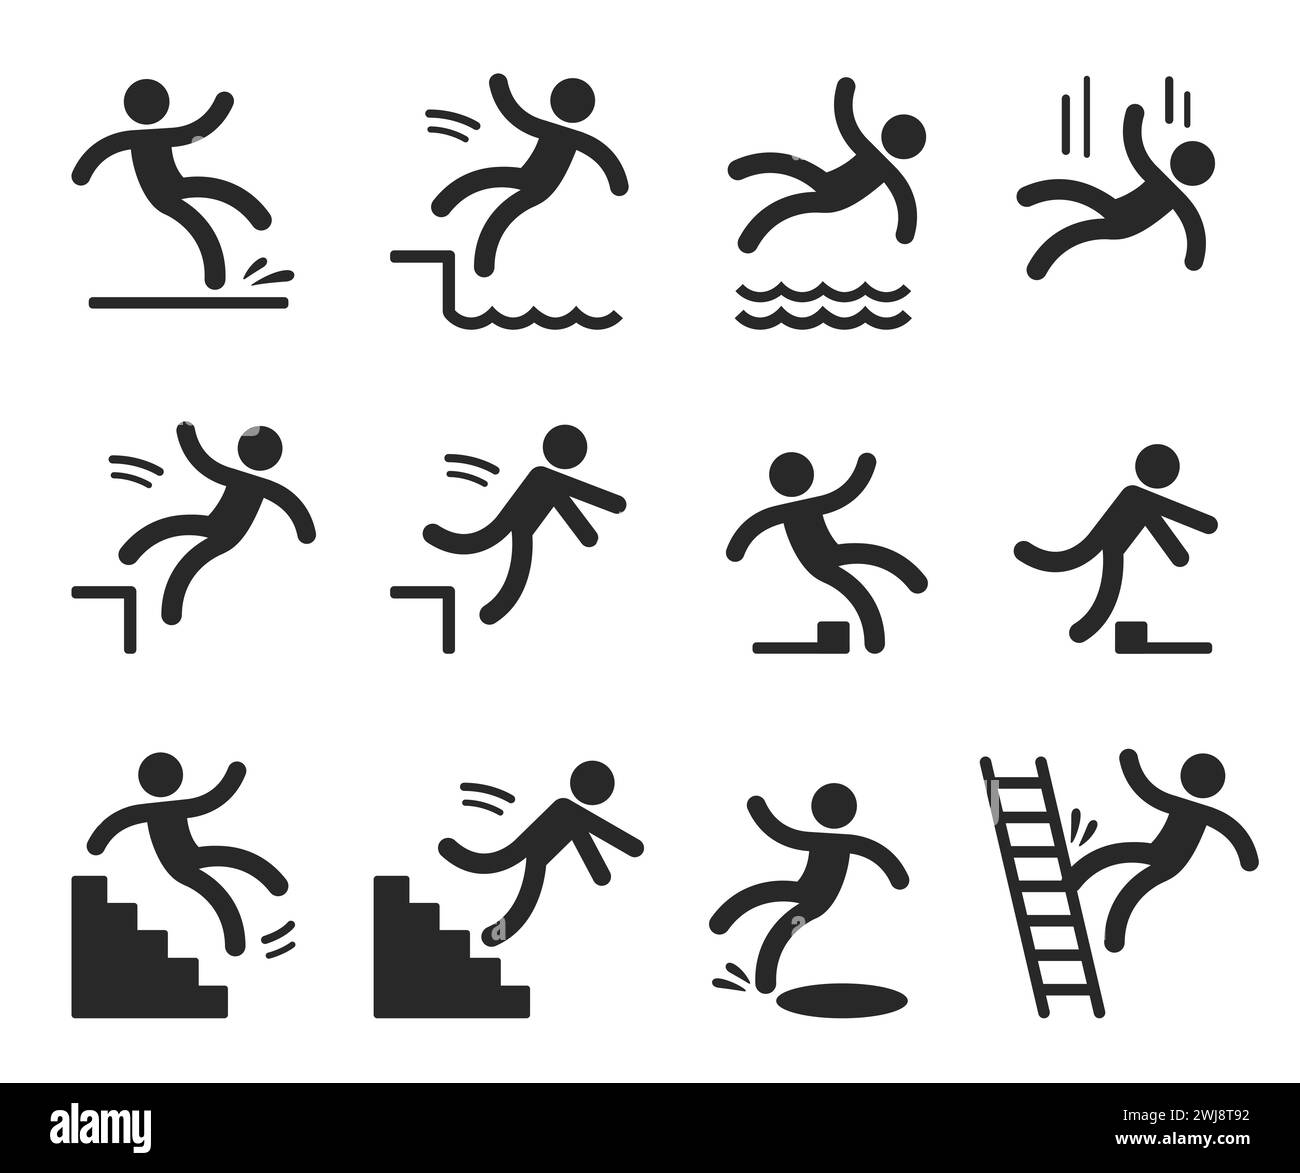 Simboli di attenzione con il personaggio dell'avambraccio che cade. Pavimento bagnato, inciampo, caduta da scale, scala, acqua, bordo. Sicurezza sul luogo di lavoro e illus vettoriale di lesioni Illustrazione Vettoriale